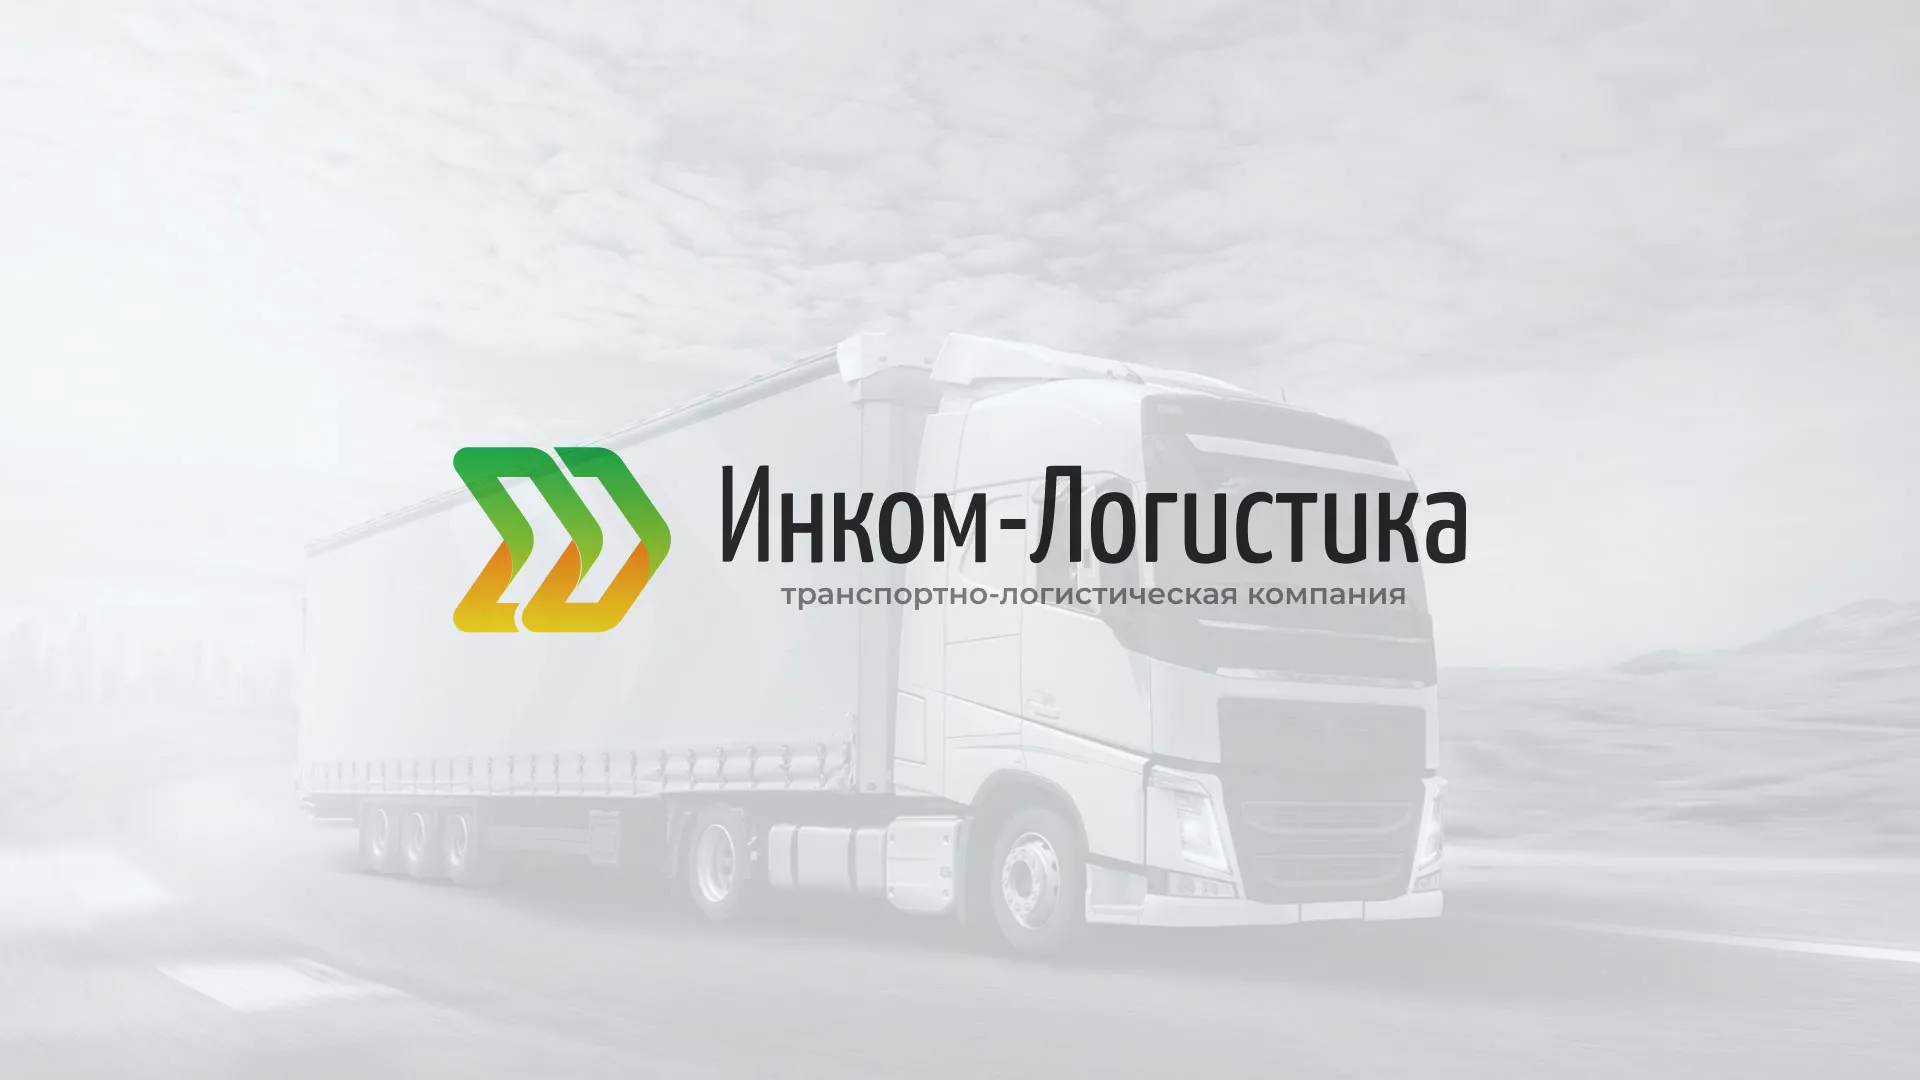 Разработка логотипа и сайта компании «Инком-Логистика» в Одинцово